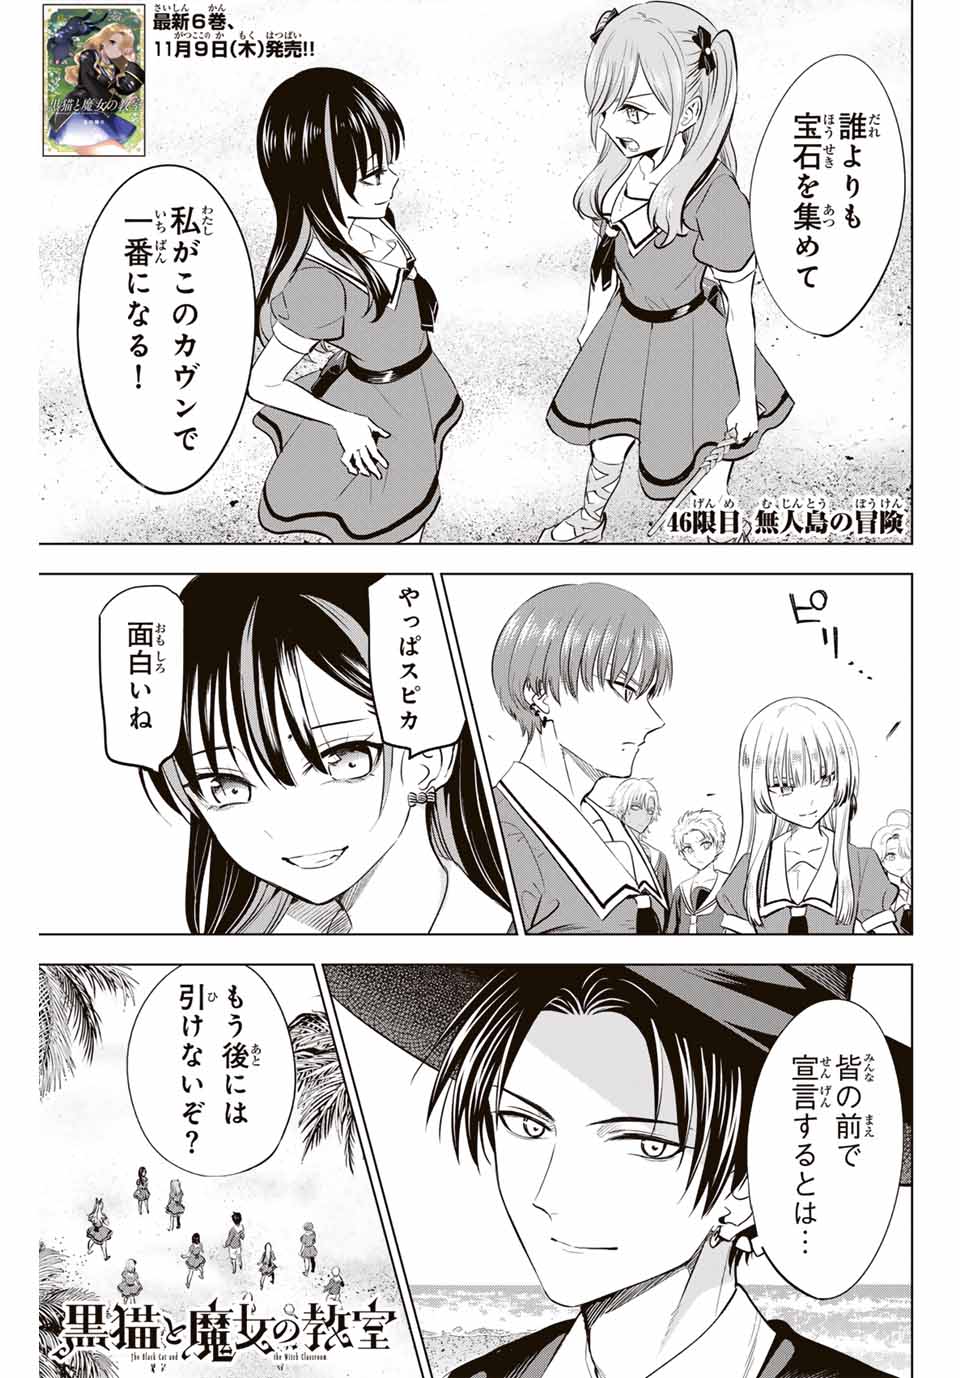 Kuroneko to Majo no Kyoushitsu - Chapter 46 - Page 1